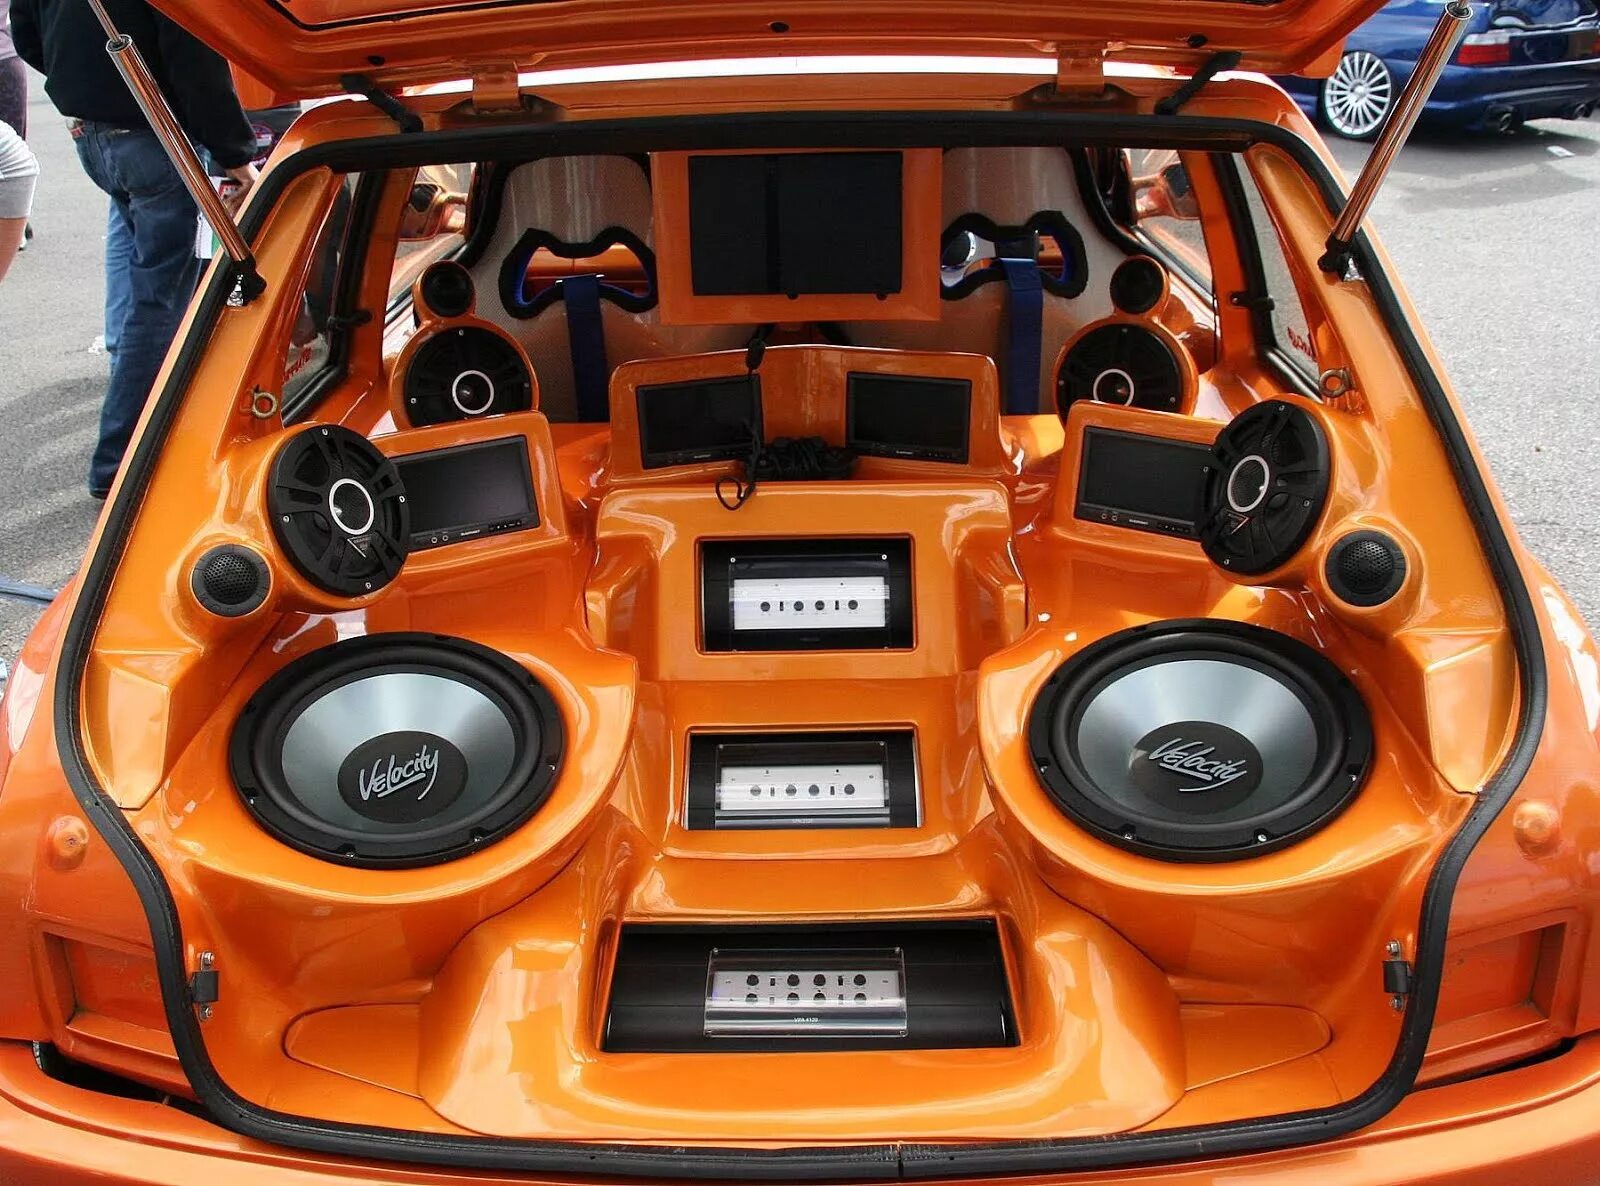 Bass auto. Car Audio автомобильные динамики. Sq Audio система FG Cruiser. Трехполосная система автозвук. Сабвуфер в машину.